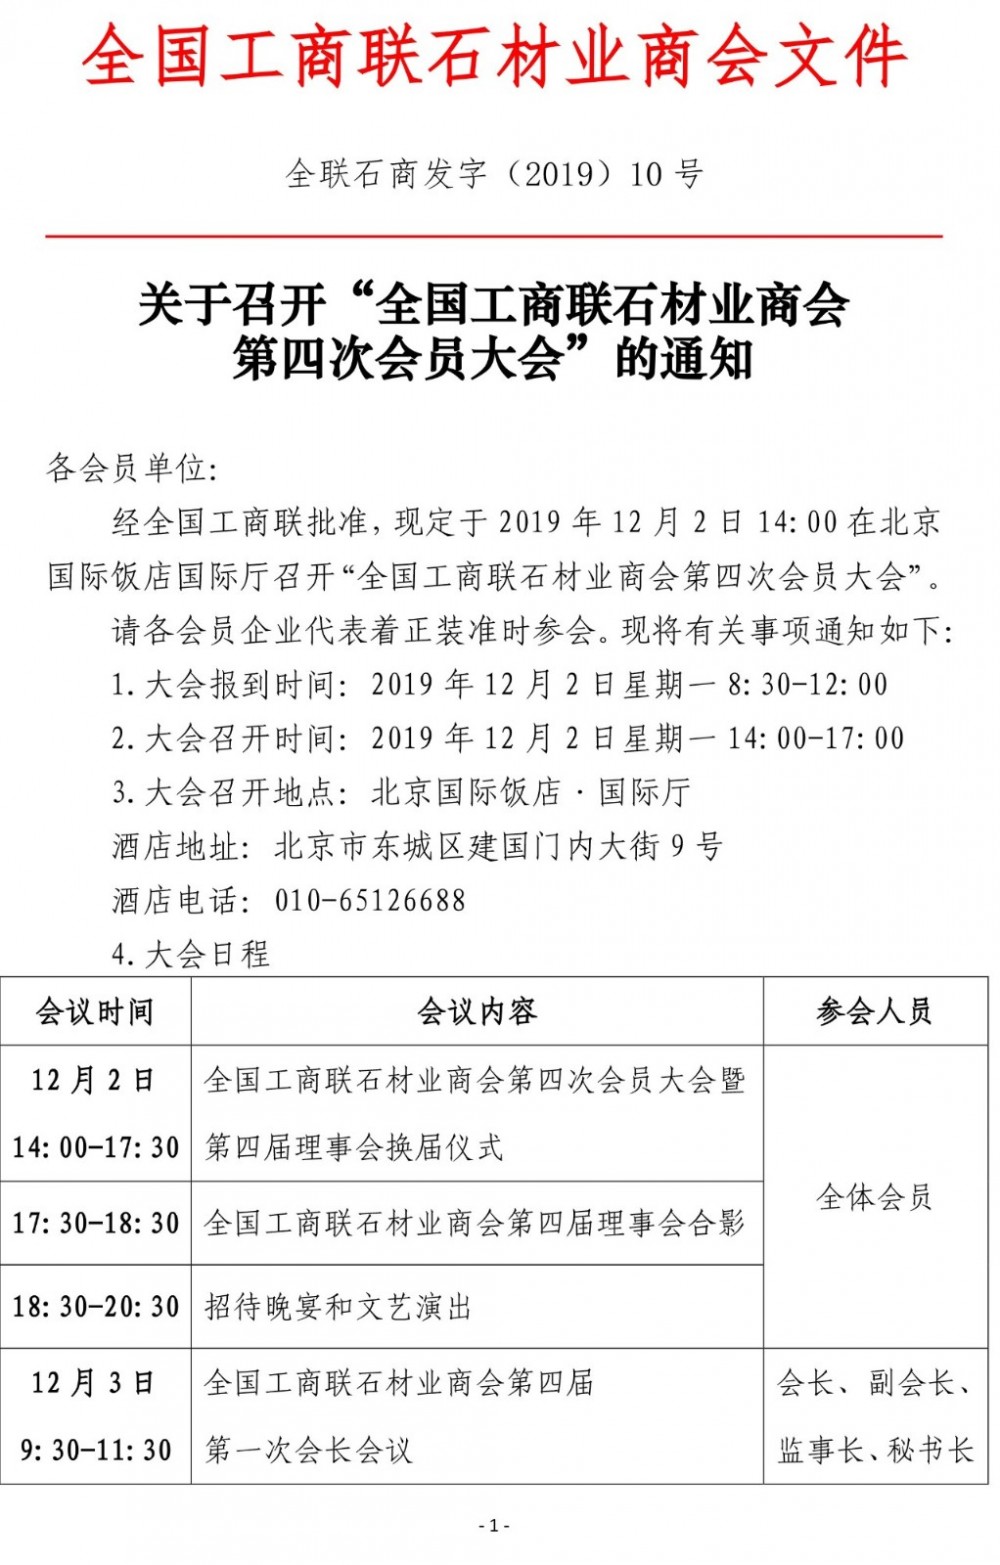 全国工商联石材业商会第四届理事会换届仪式将于12月2日召开，王清安将任会长